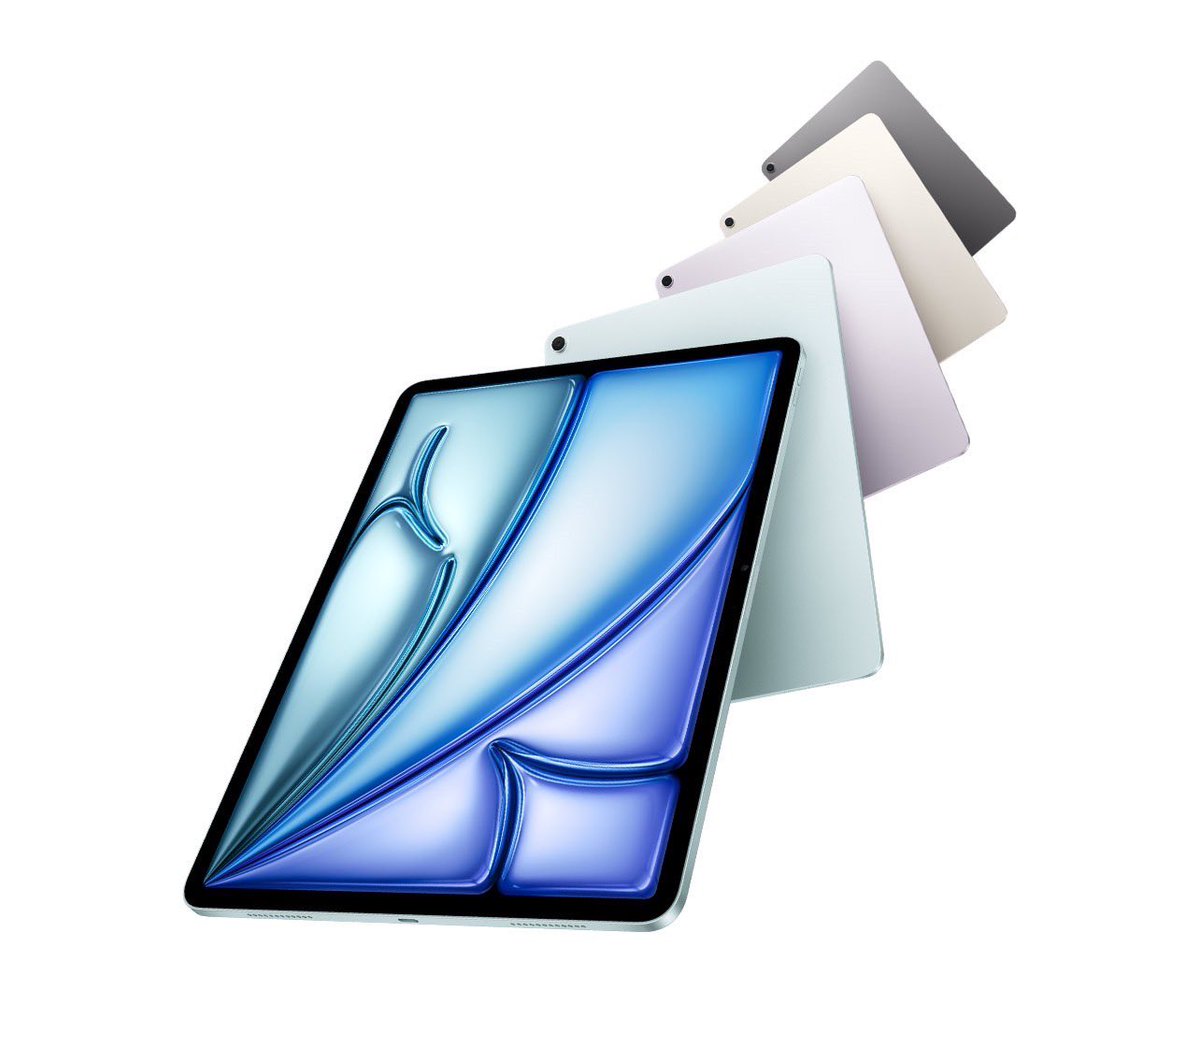 新しいiPad発表されましたね😊

iPad pro前型欲しい人
RTとフォローして！

24台だけ！